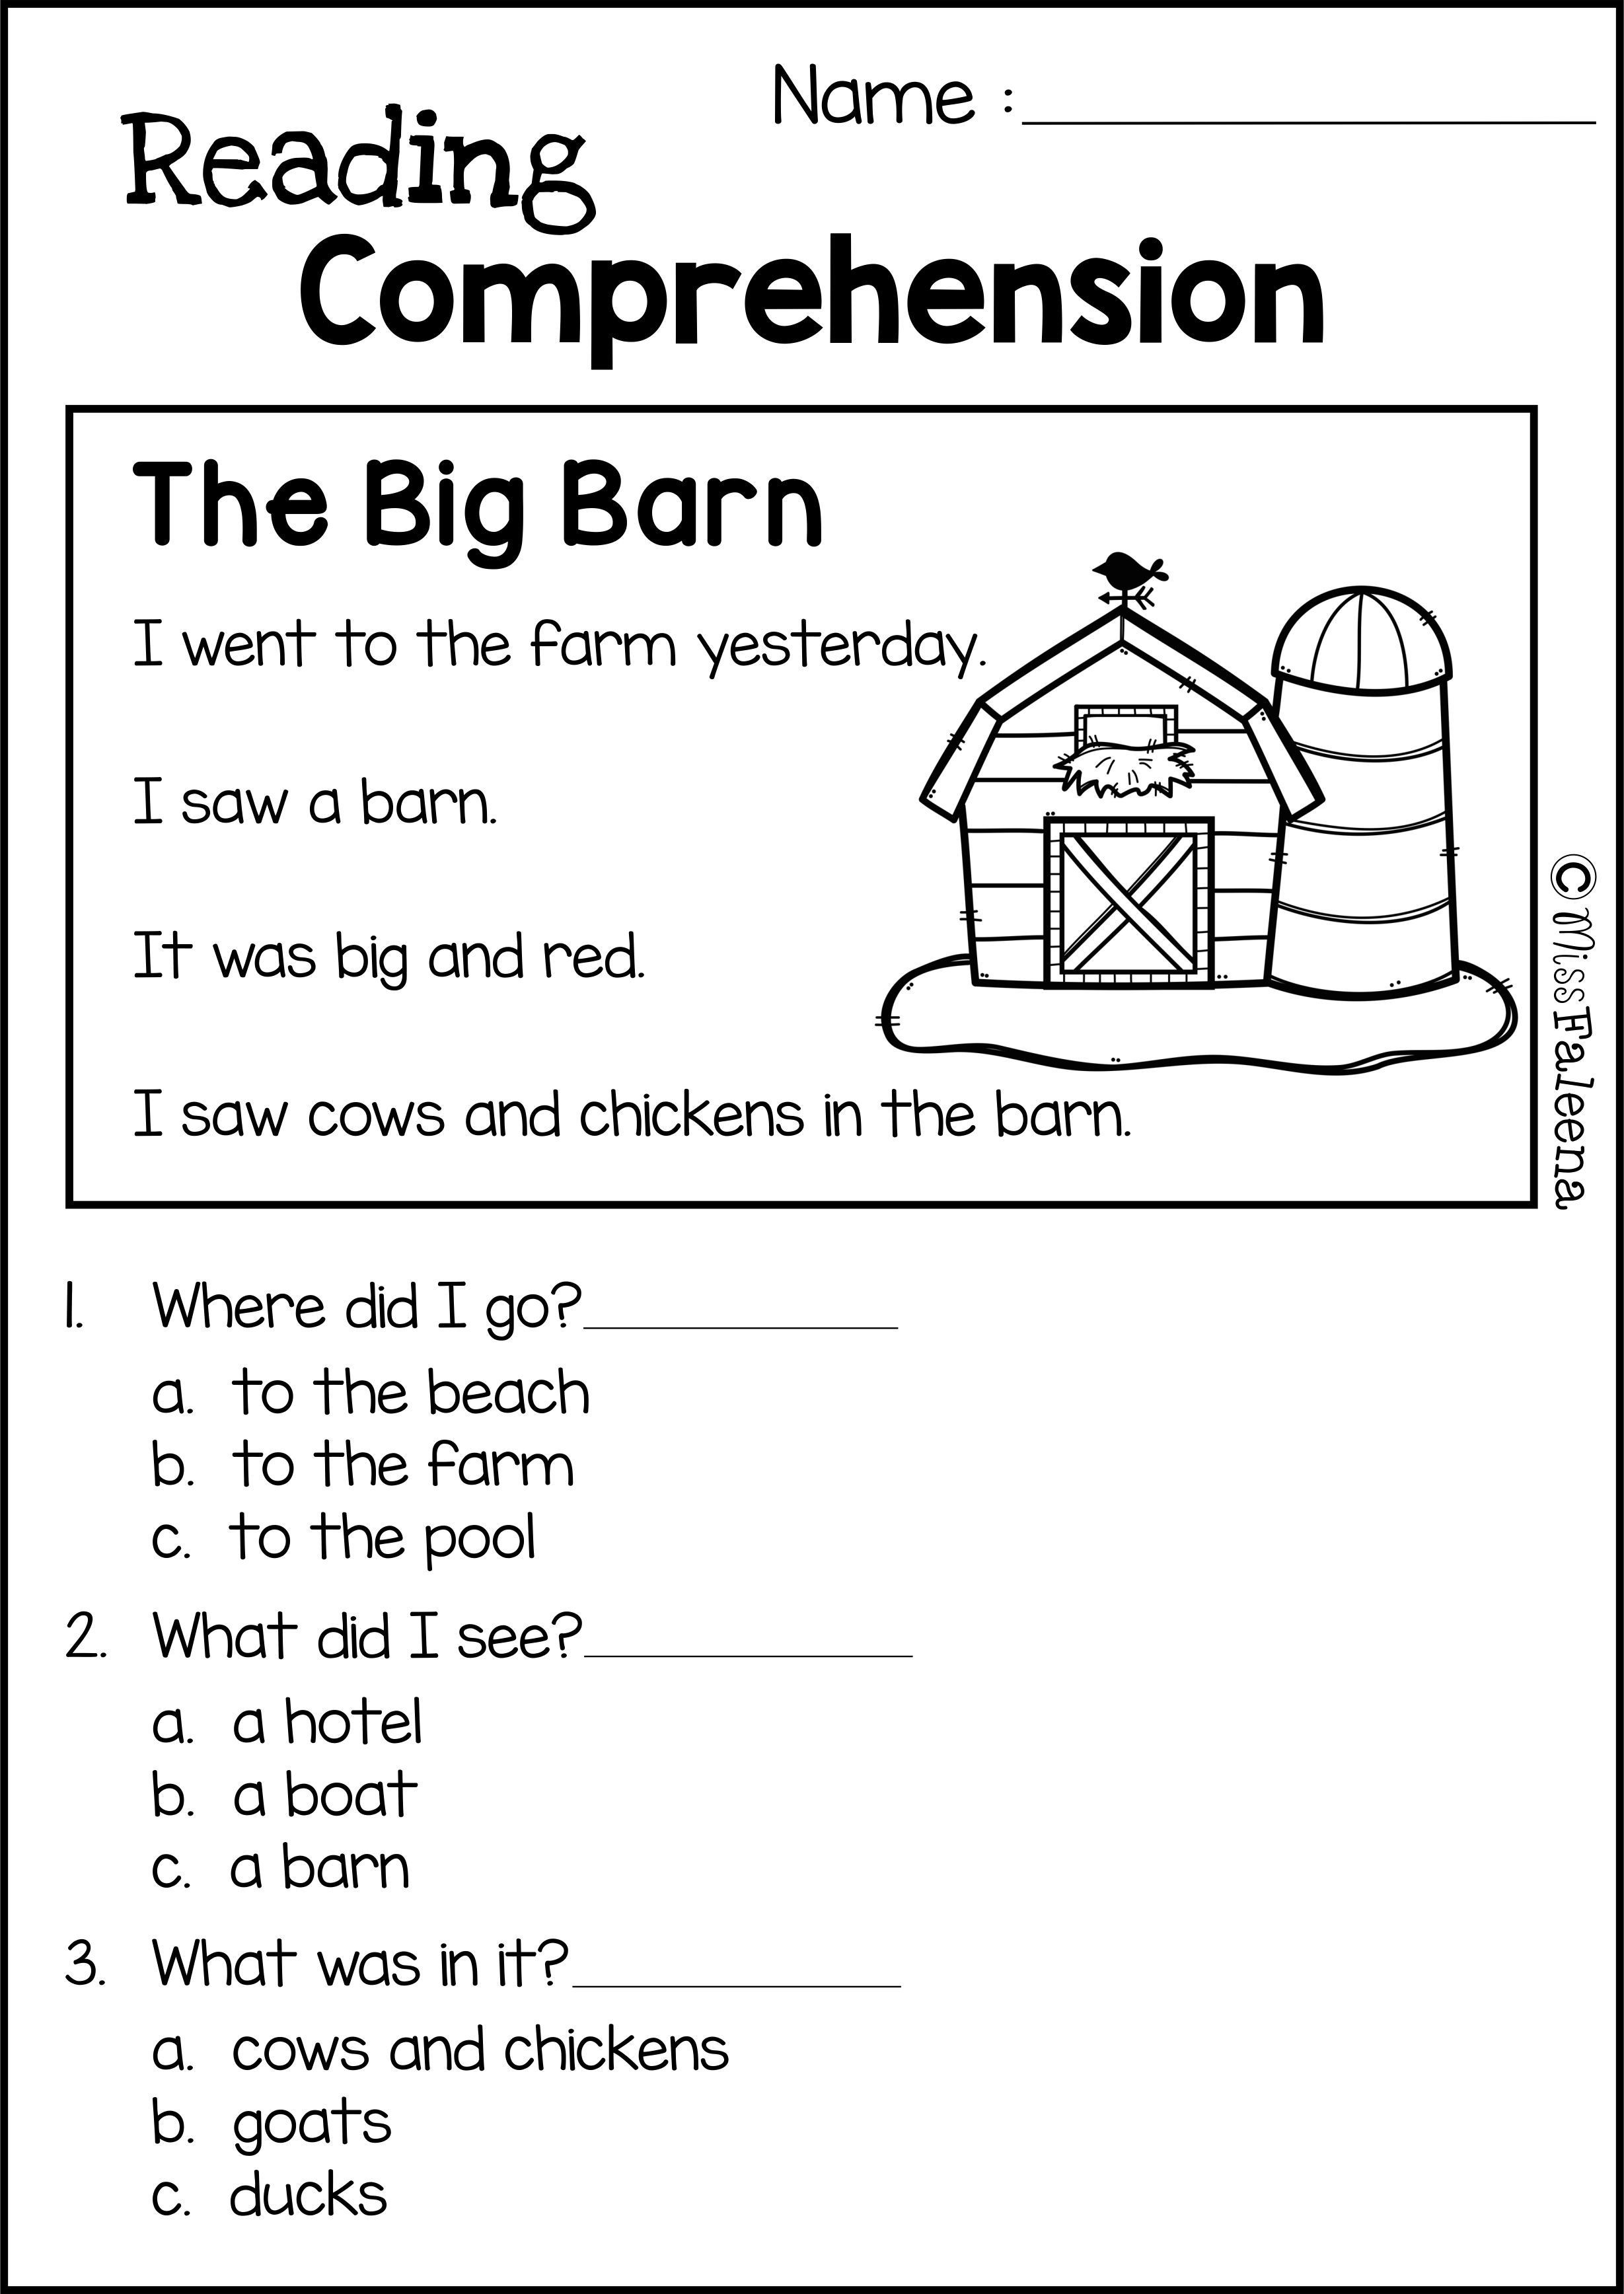 Comprehension Worksheet First Grade Reading Prehension Set 2